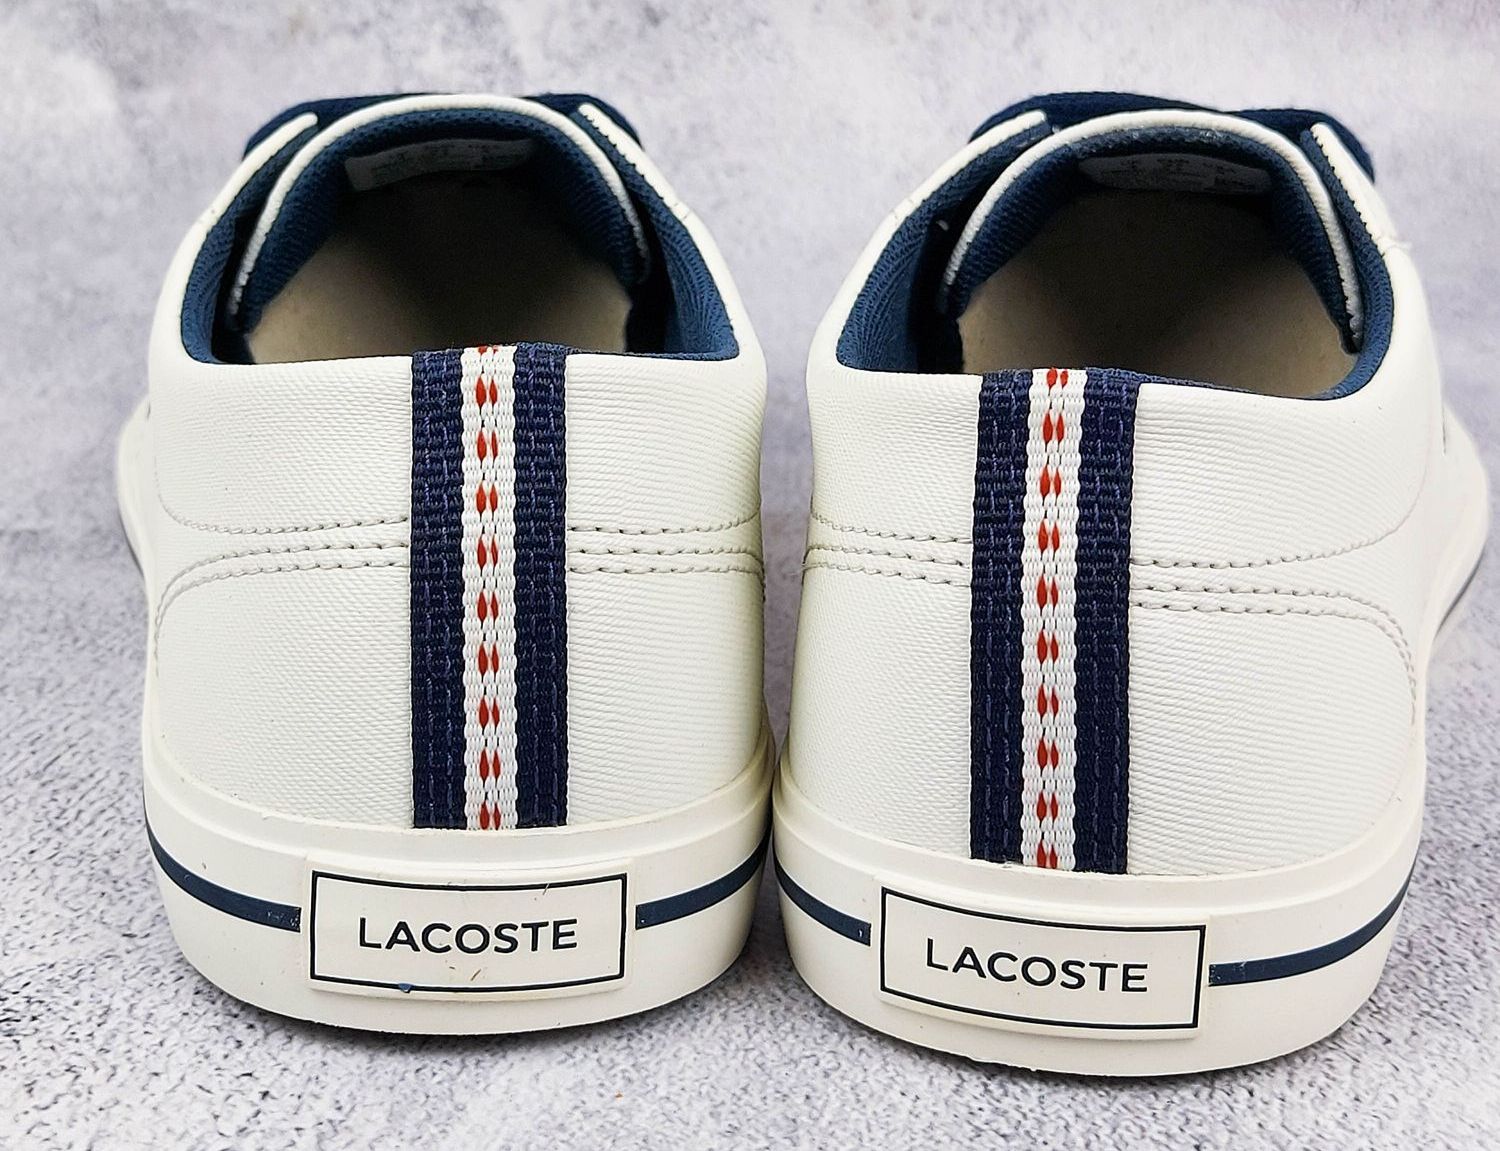 Jak rozpoznać oryginalne buty Lacoste? –